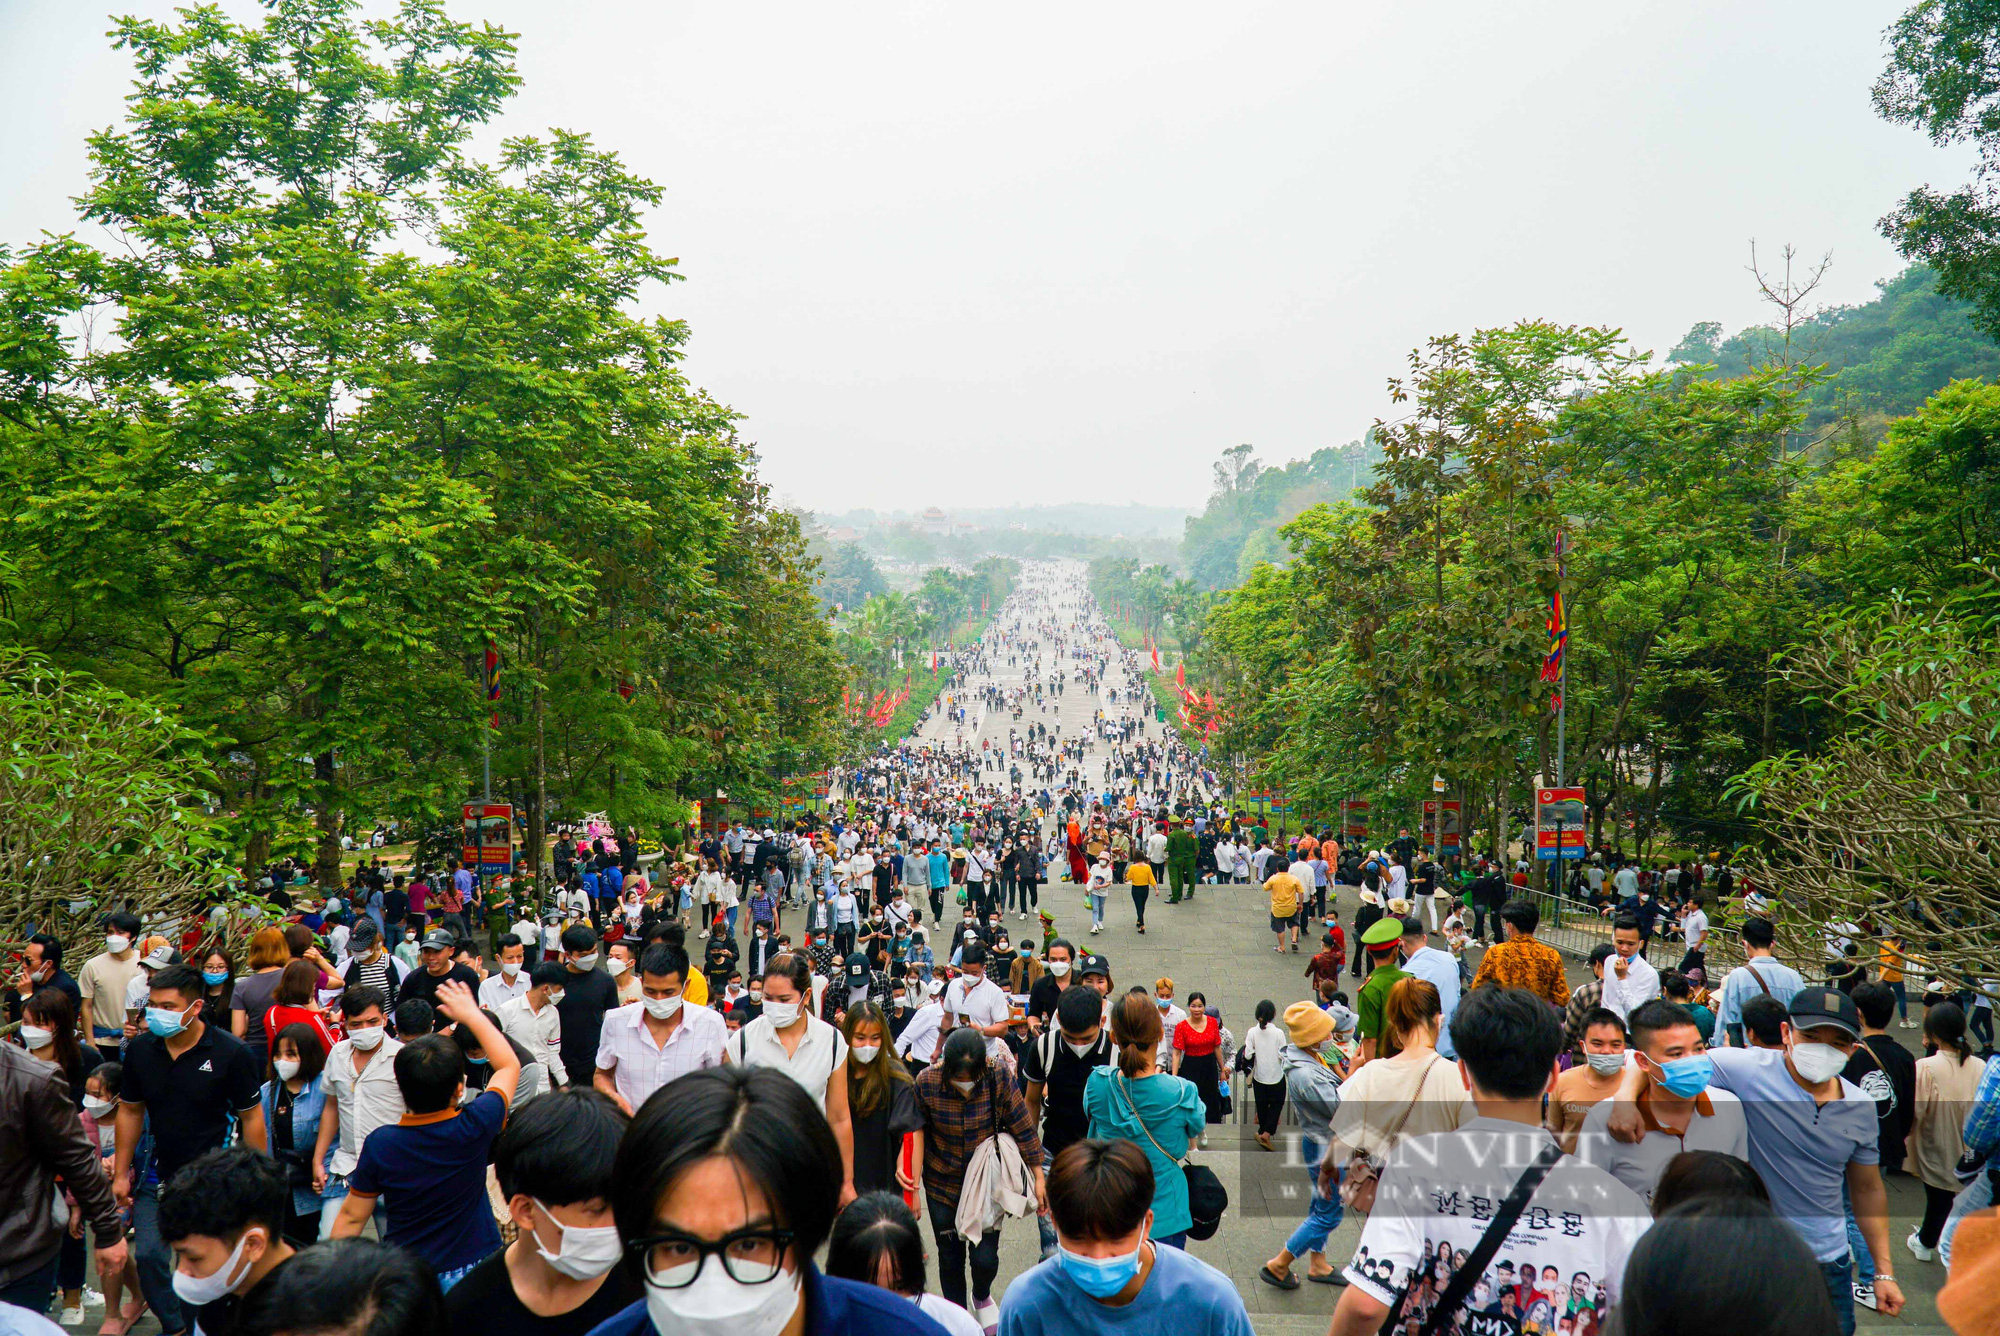 Hàng vạn người dân chen chân đổ về đền Hùng dự Quốc lễ - Ảnh 2.